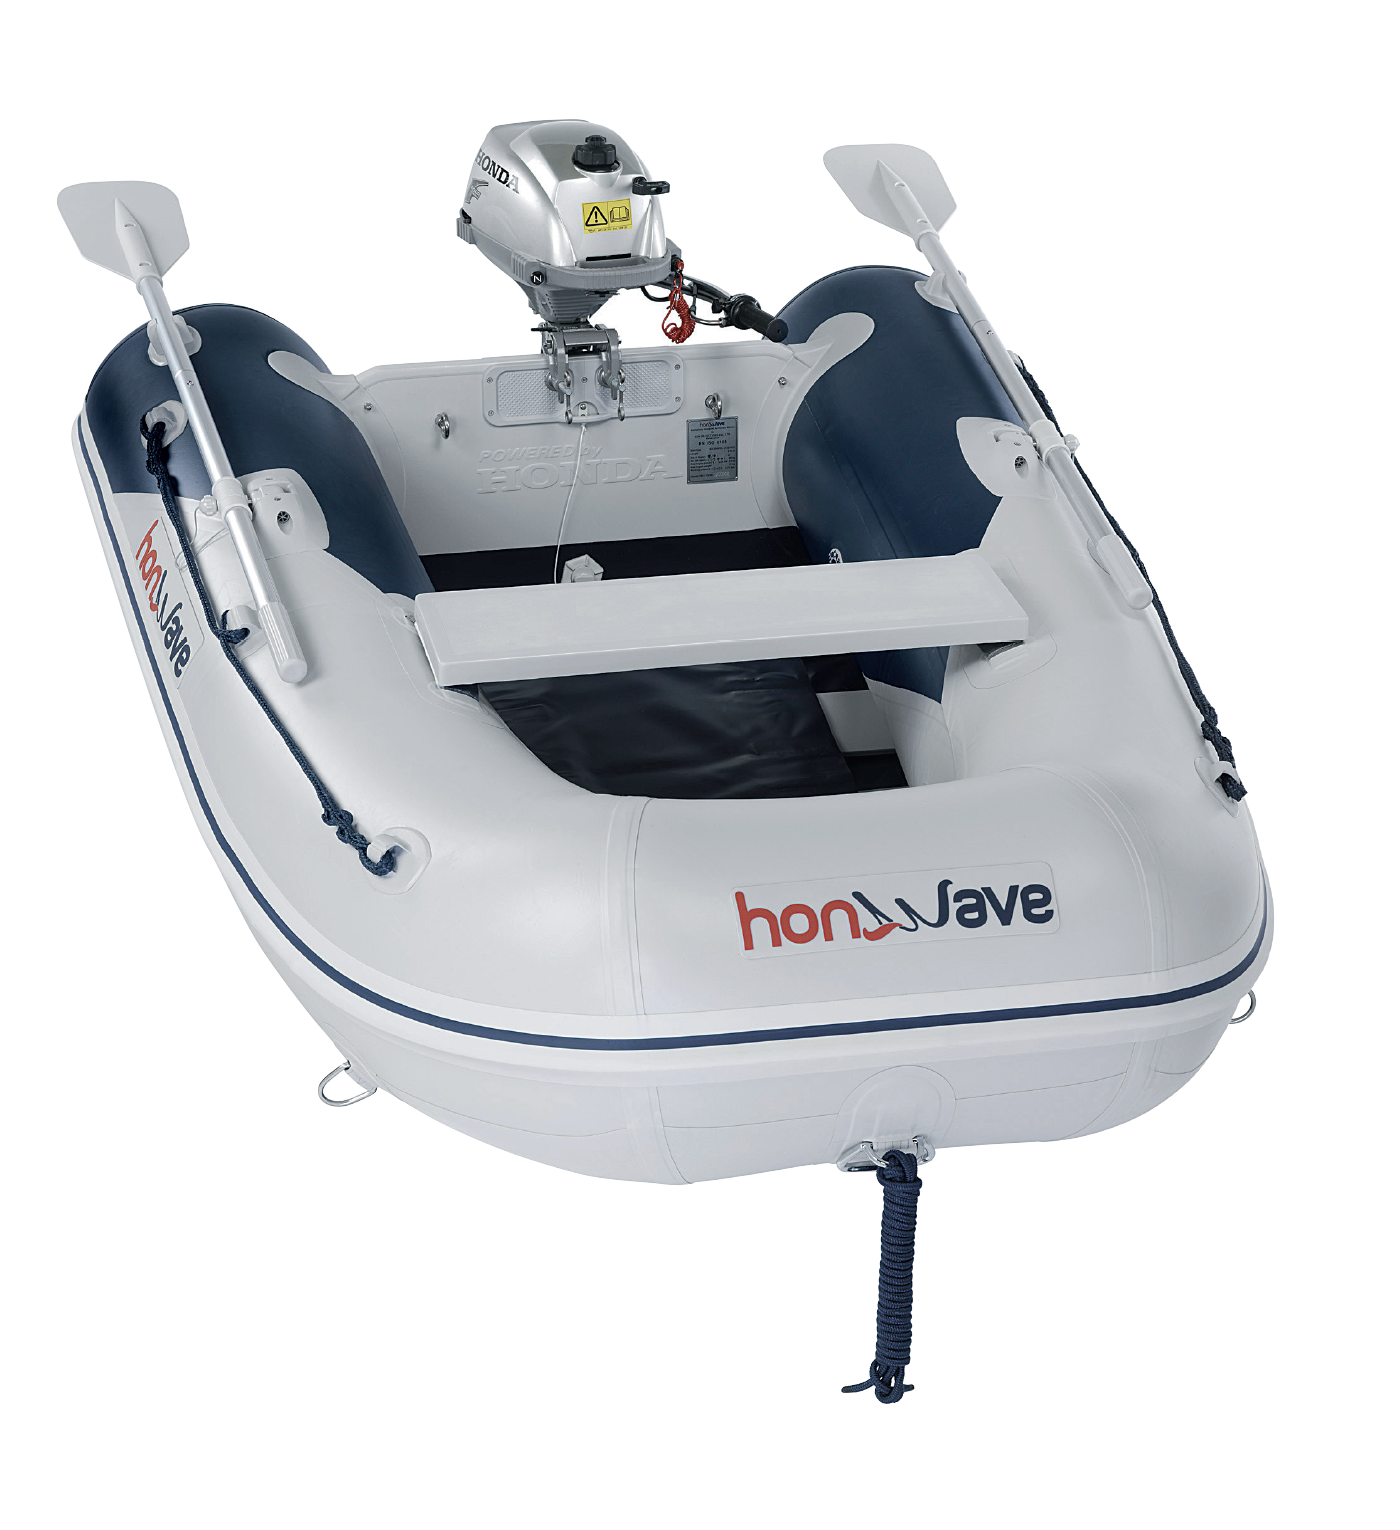 Купить надувную лодку ПВХ - цены на лодку под мотор | Интернет-магазин HunterBoat